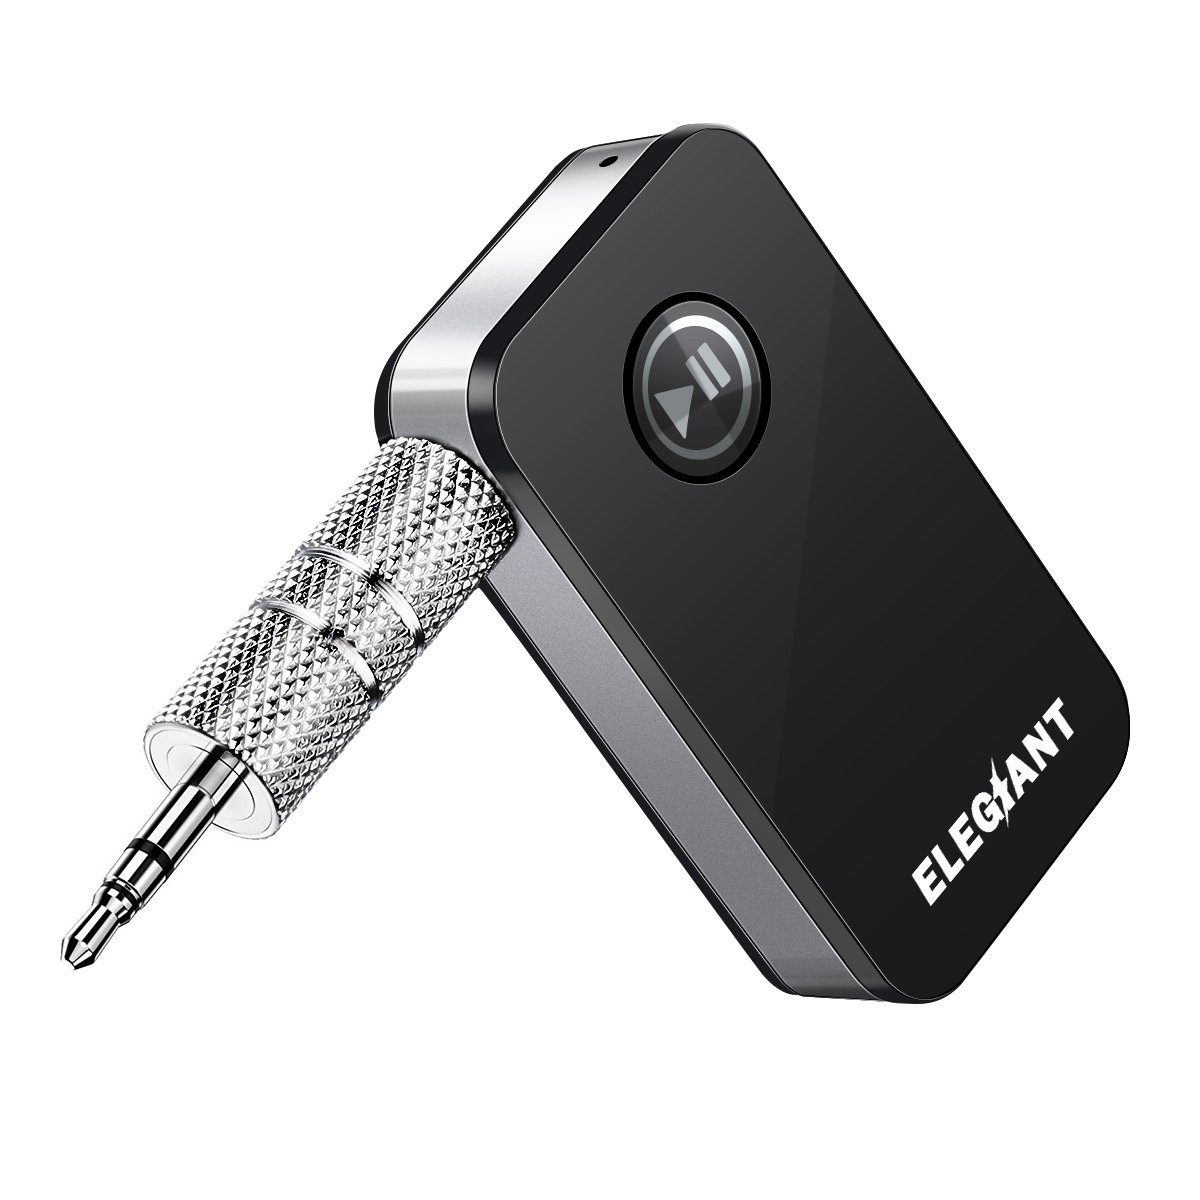 Kaufe Bluetooth Aux Adapter Dongle USB auf 3,5 mm Klinke Auto